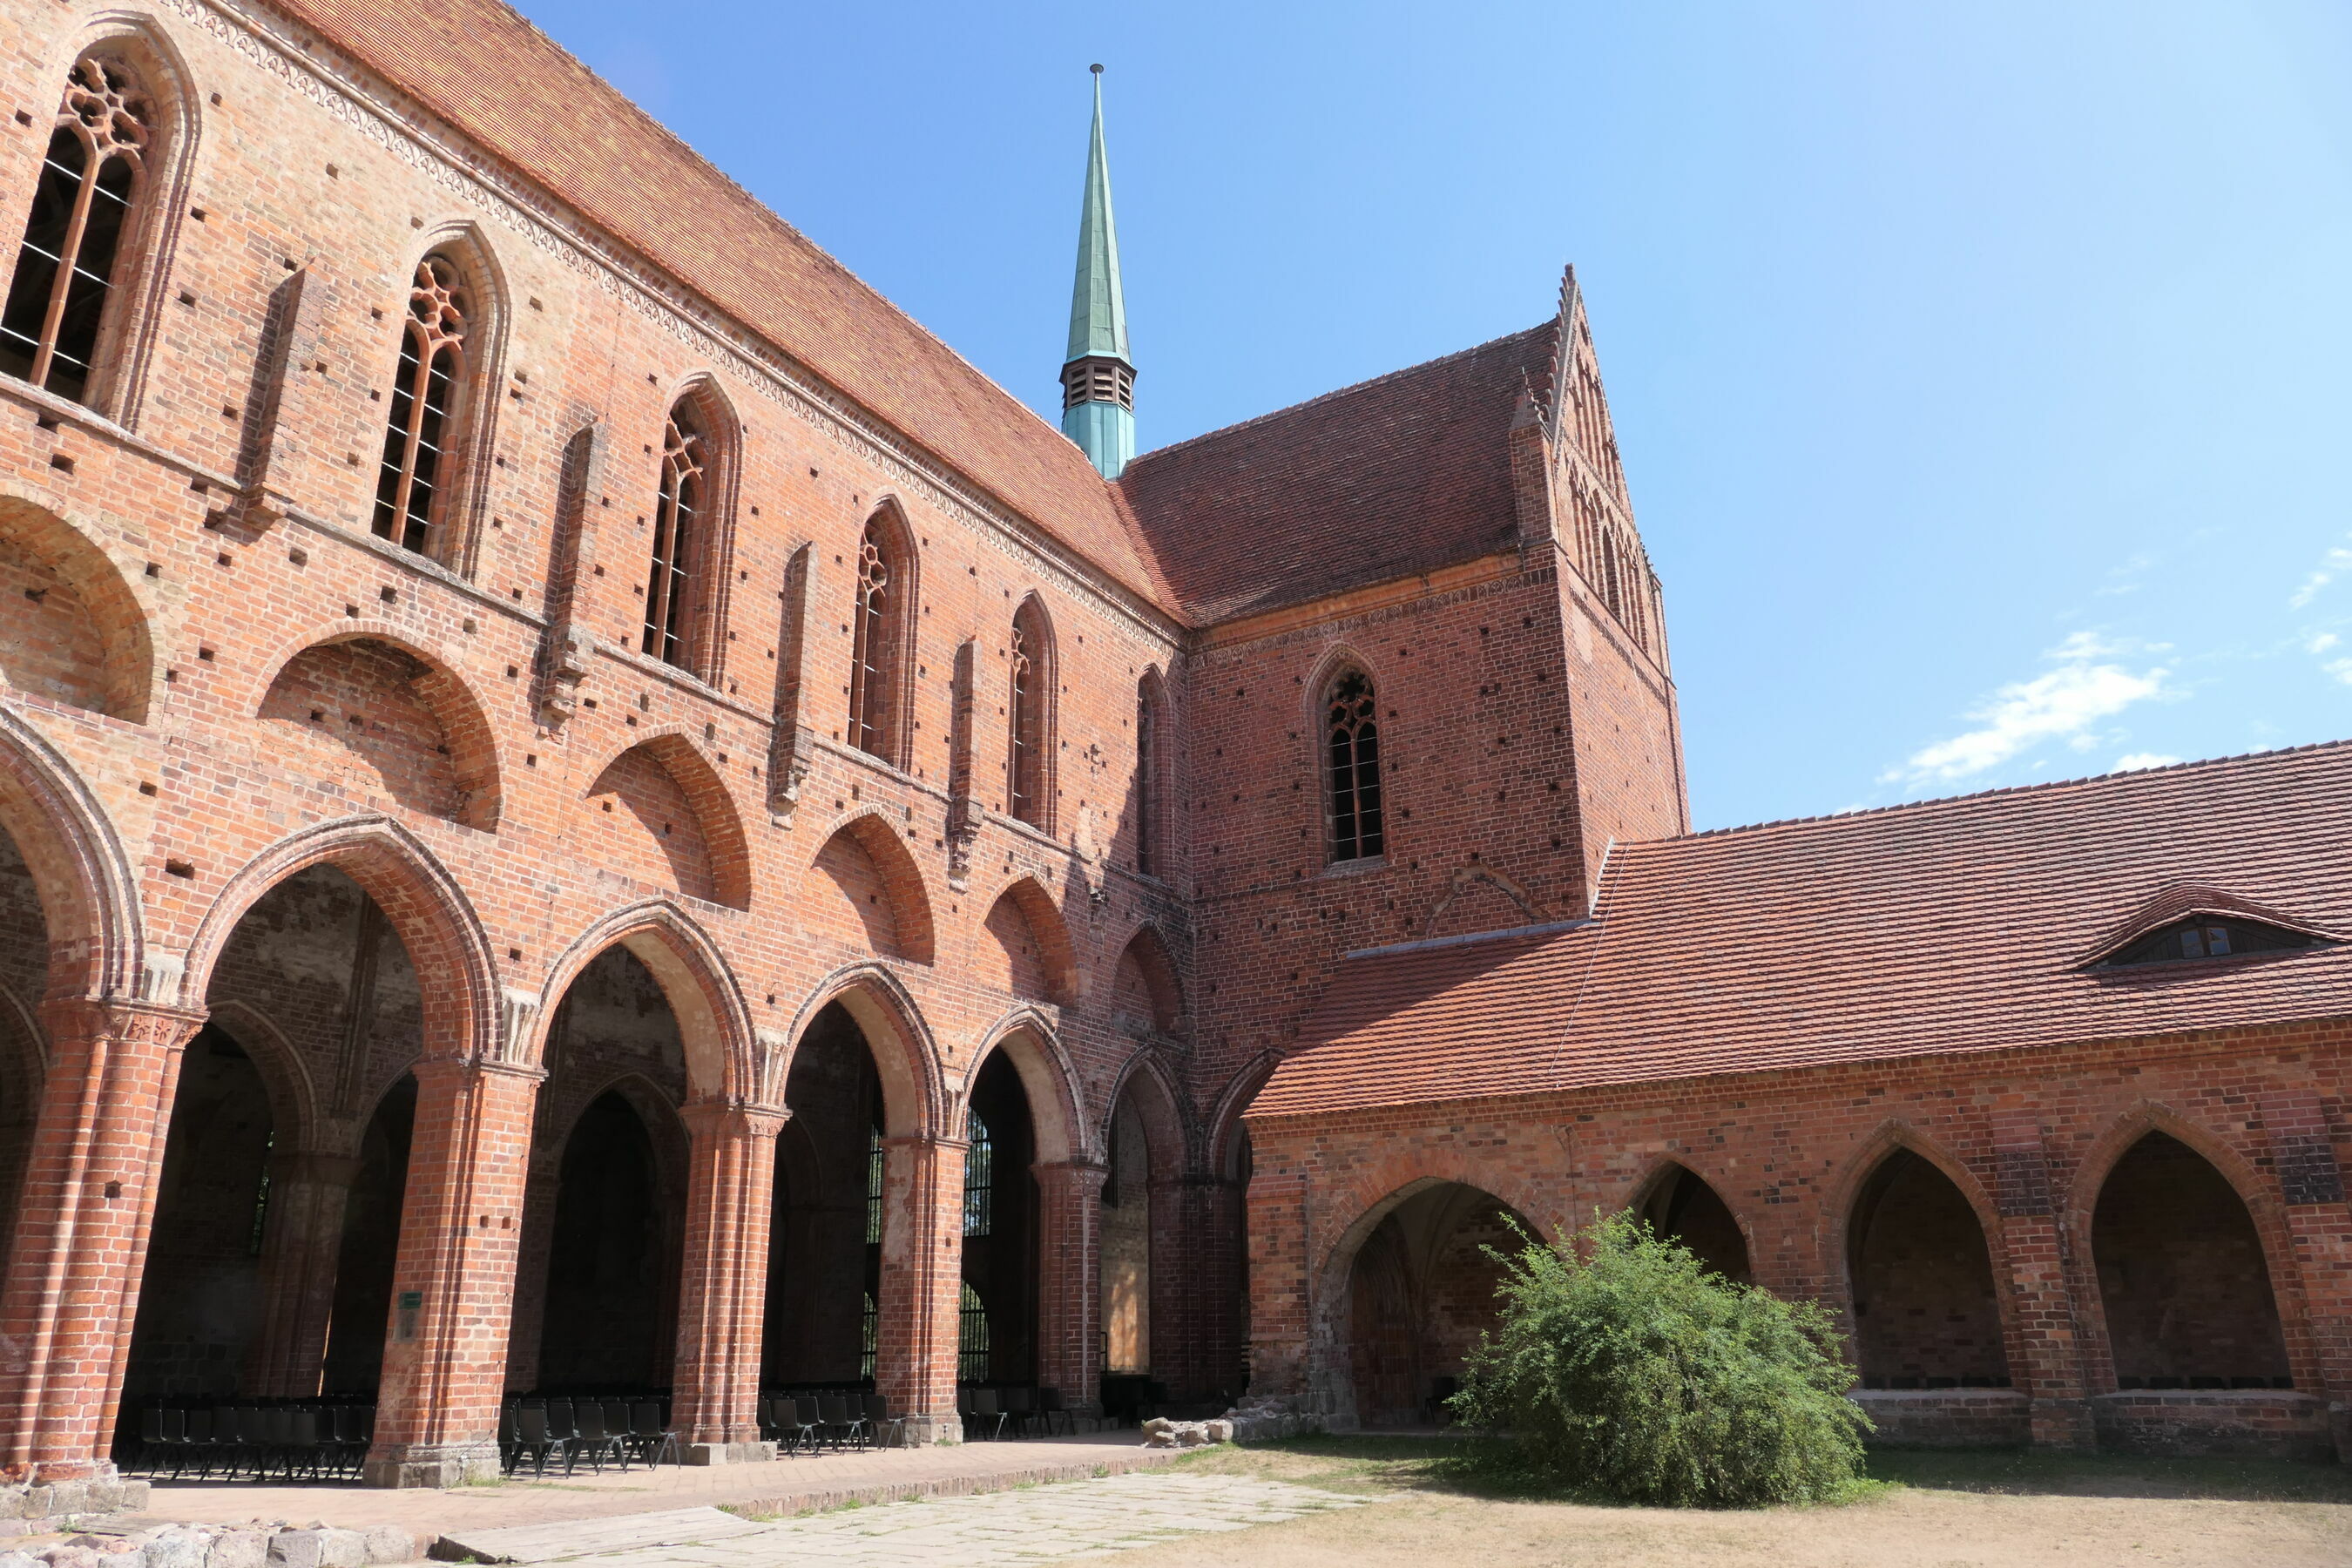 Kloster Chorin, Foto: Stephanie Schilk, Lizenz: Stephanie Schilk